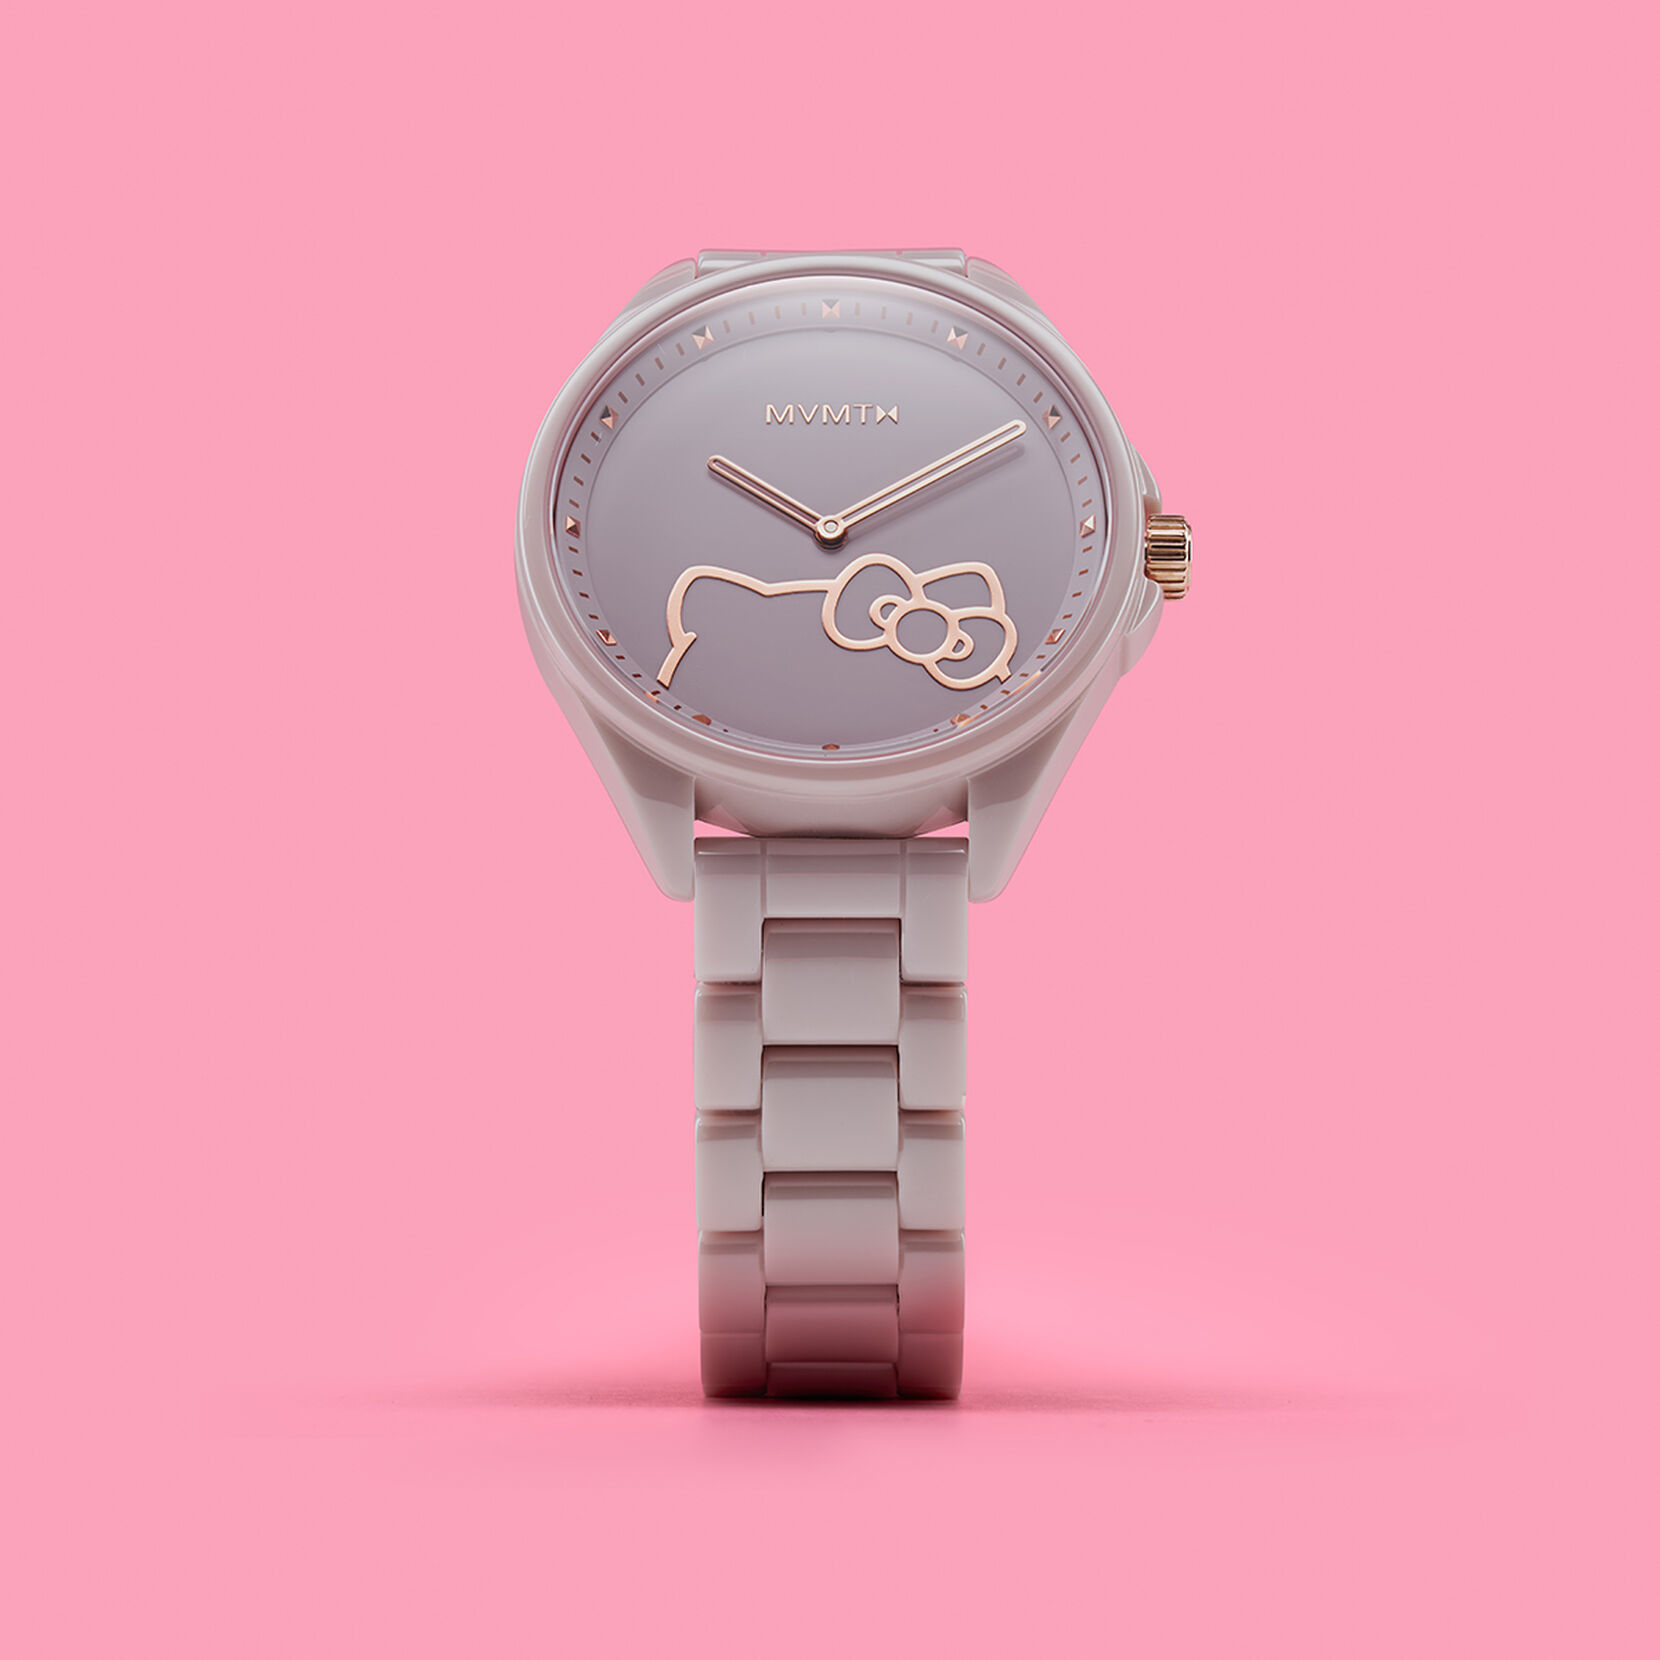 HELLO KITTY X MVMT: Ceramic Watch in Hello Kitty Blush | MVMT